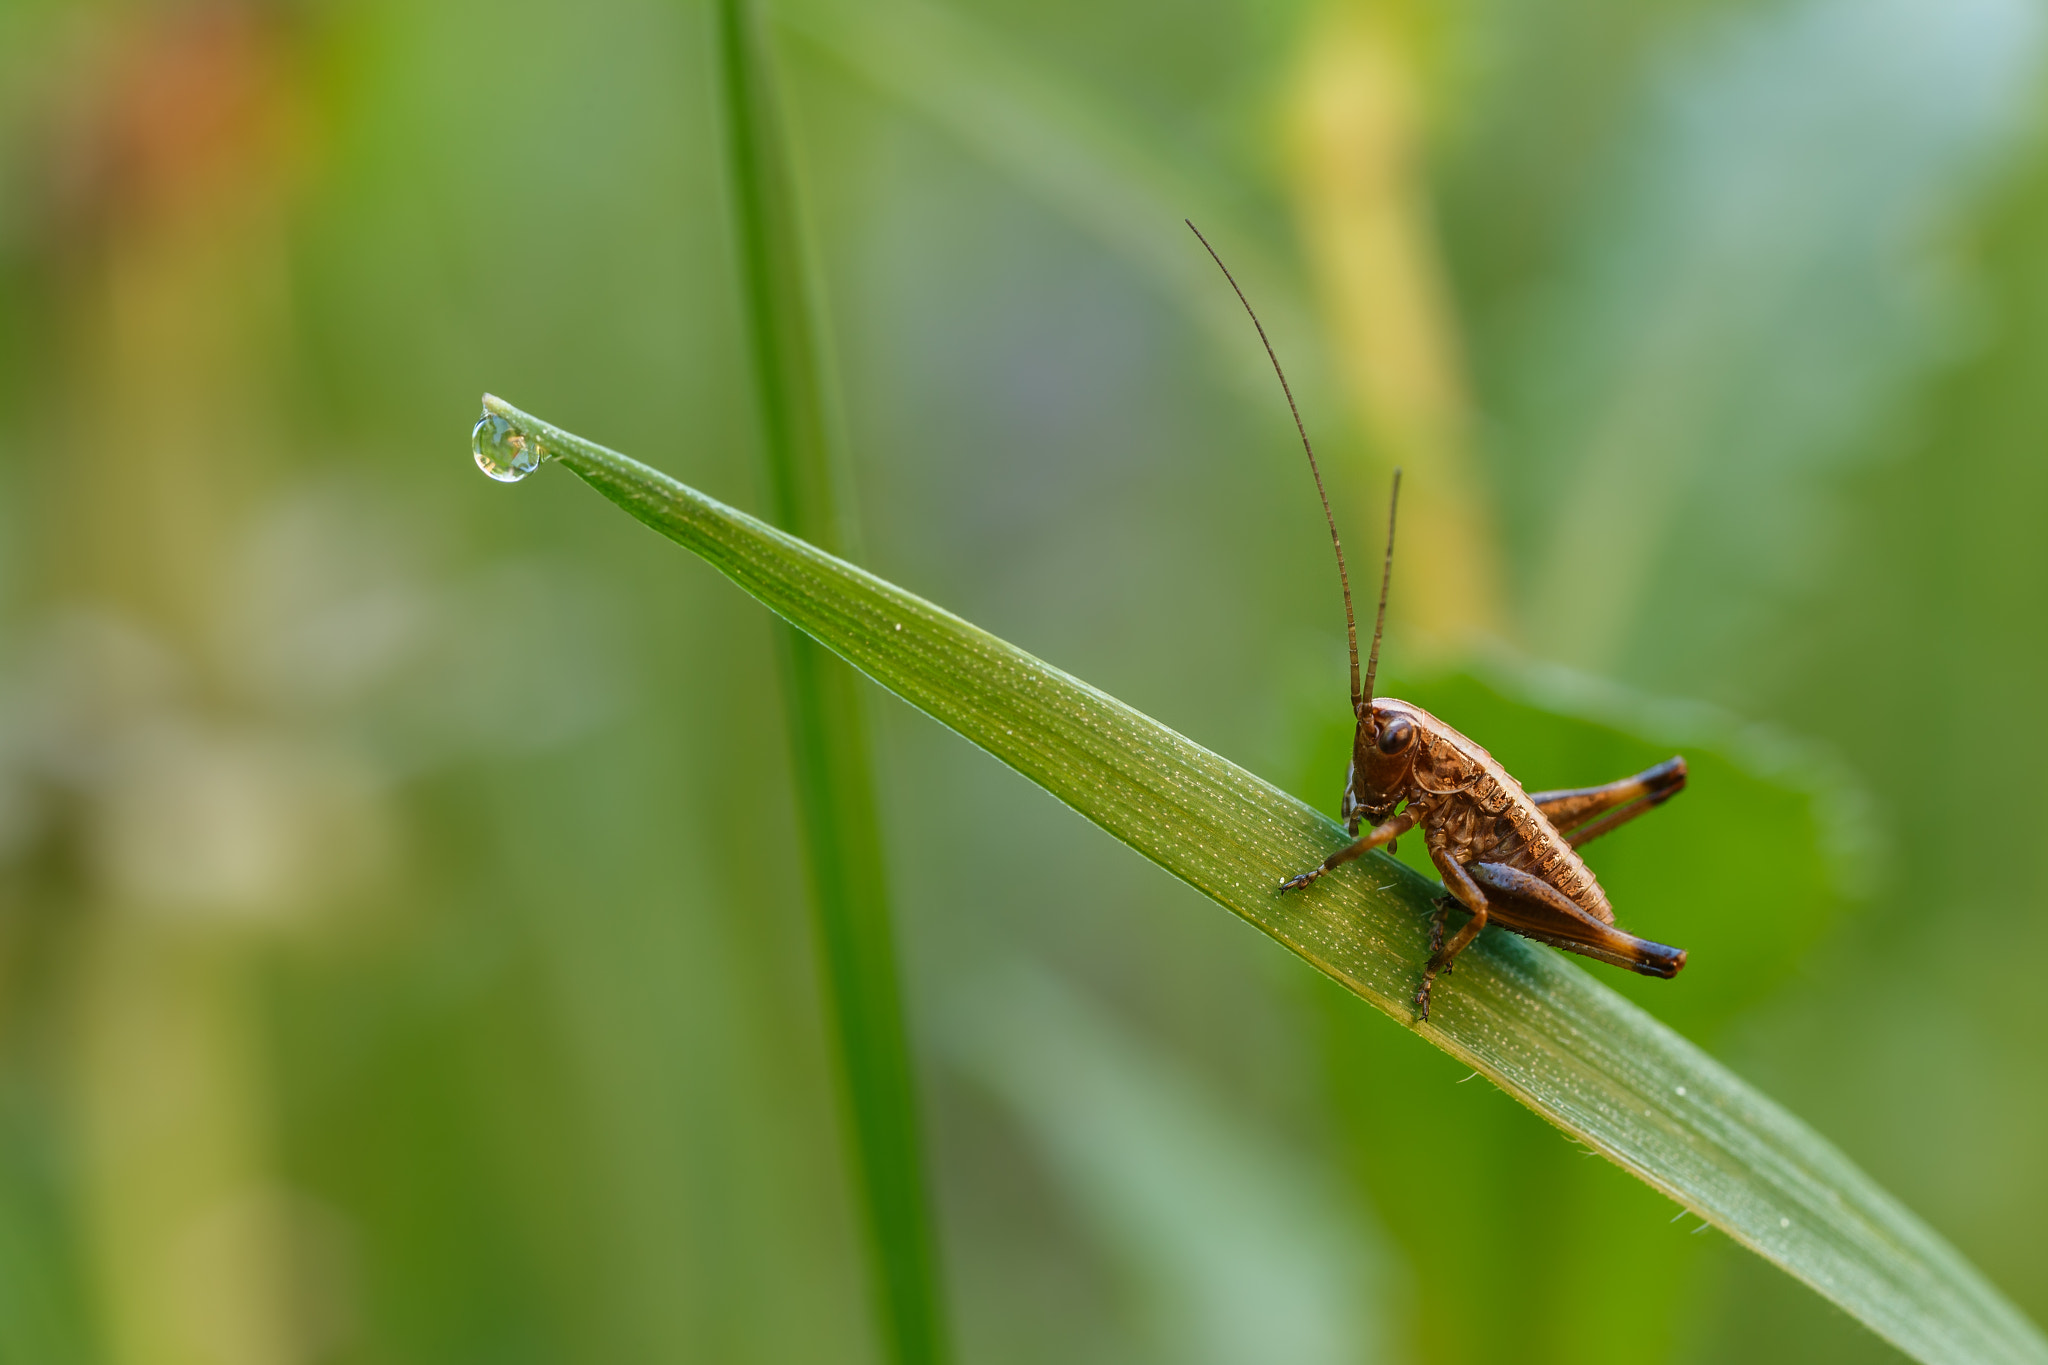 Canon EOS 6D sample photo. Grasshopper photography